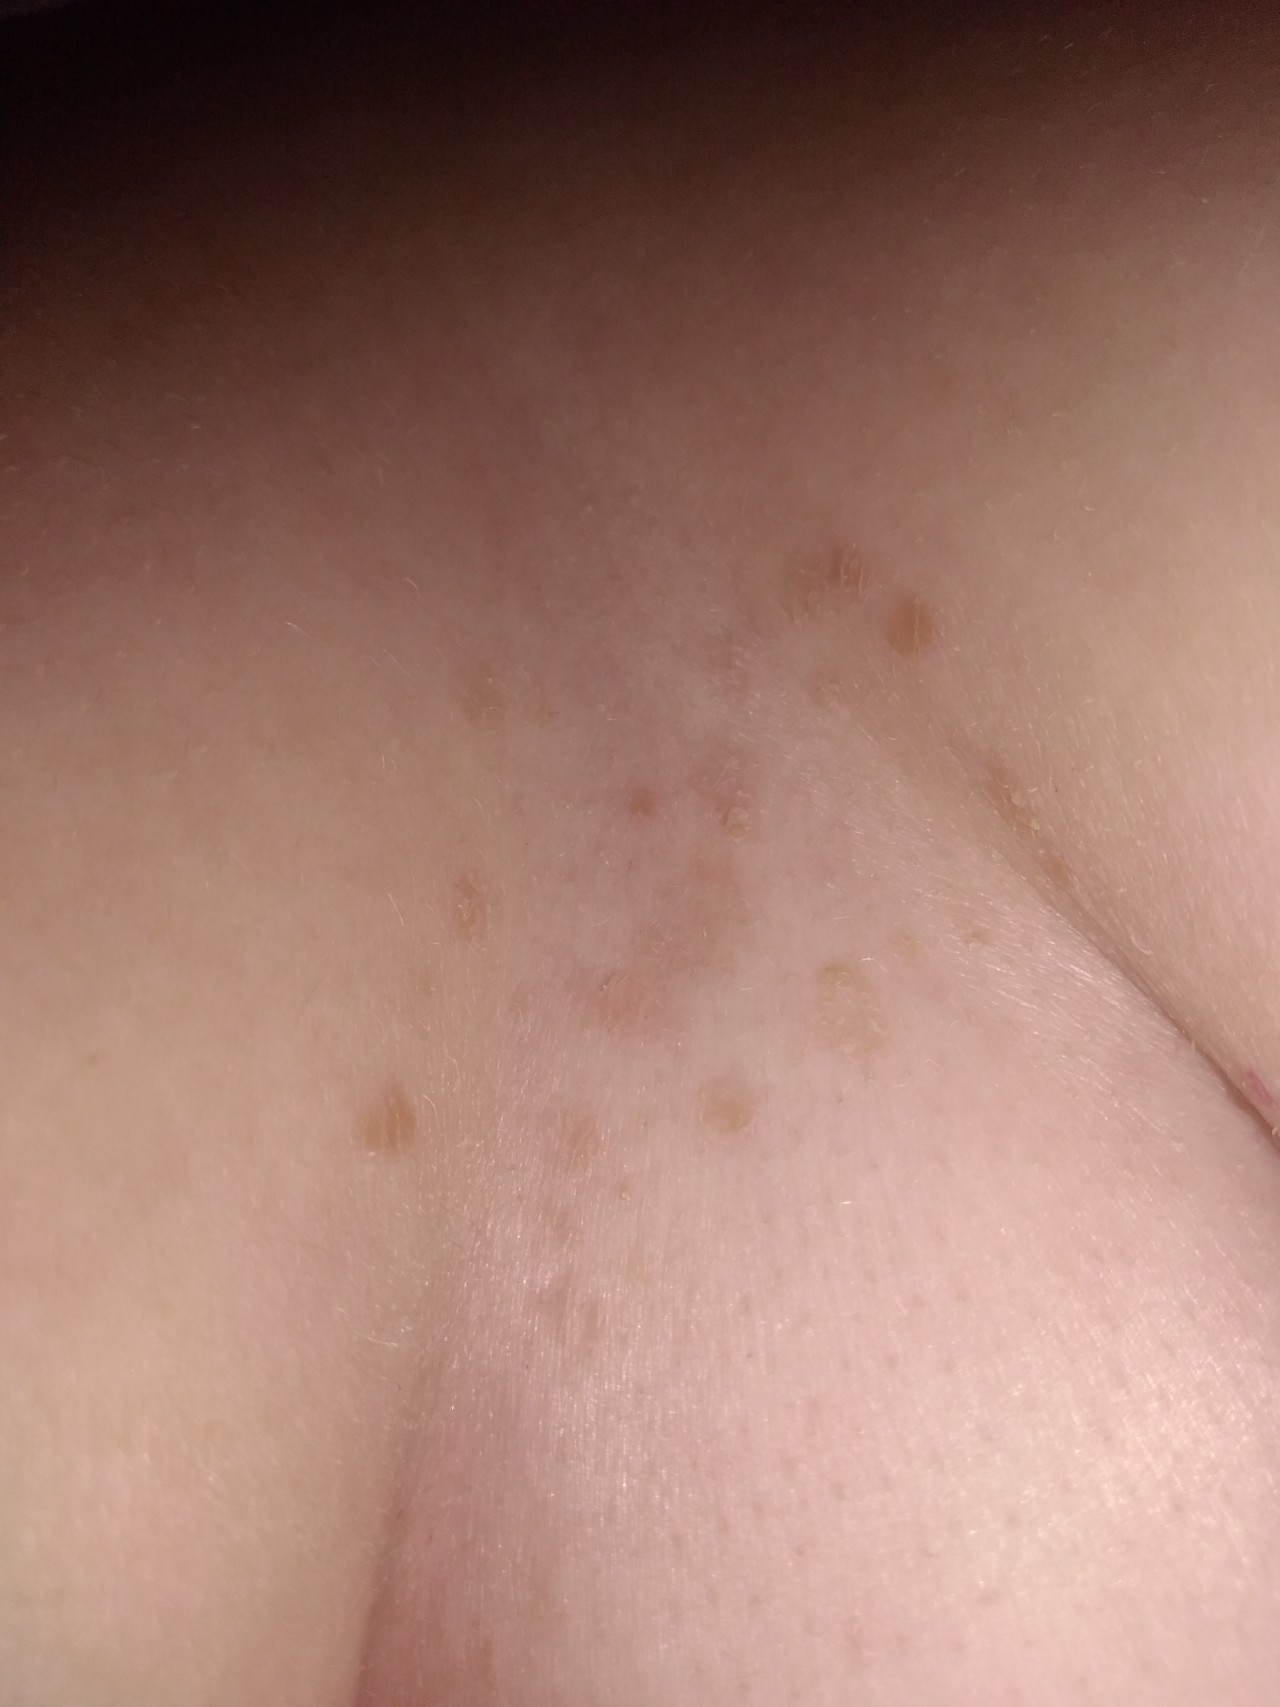 сыпь на груди чешется у женщин фото 106